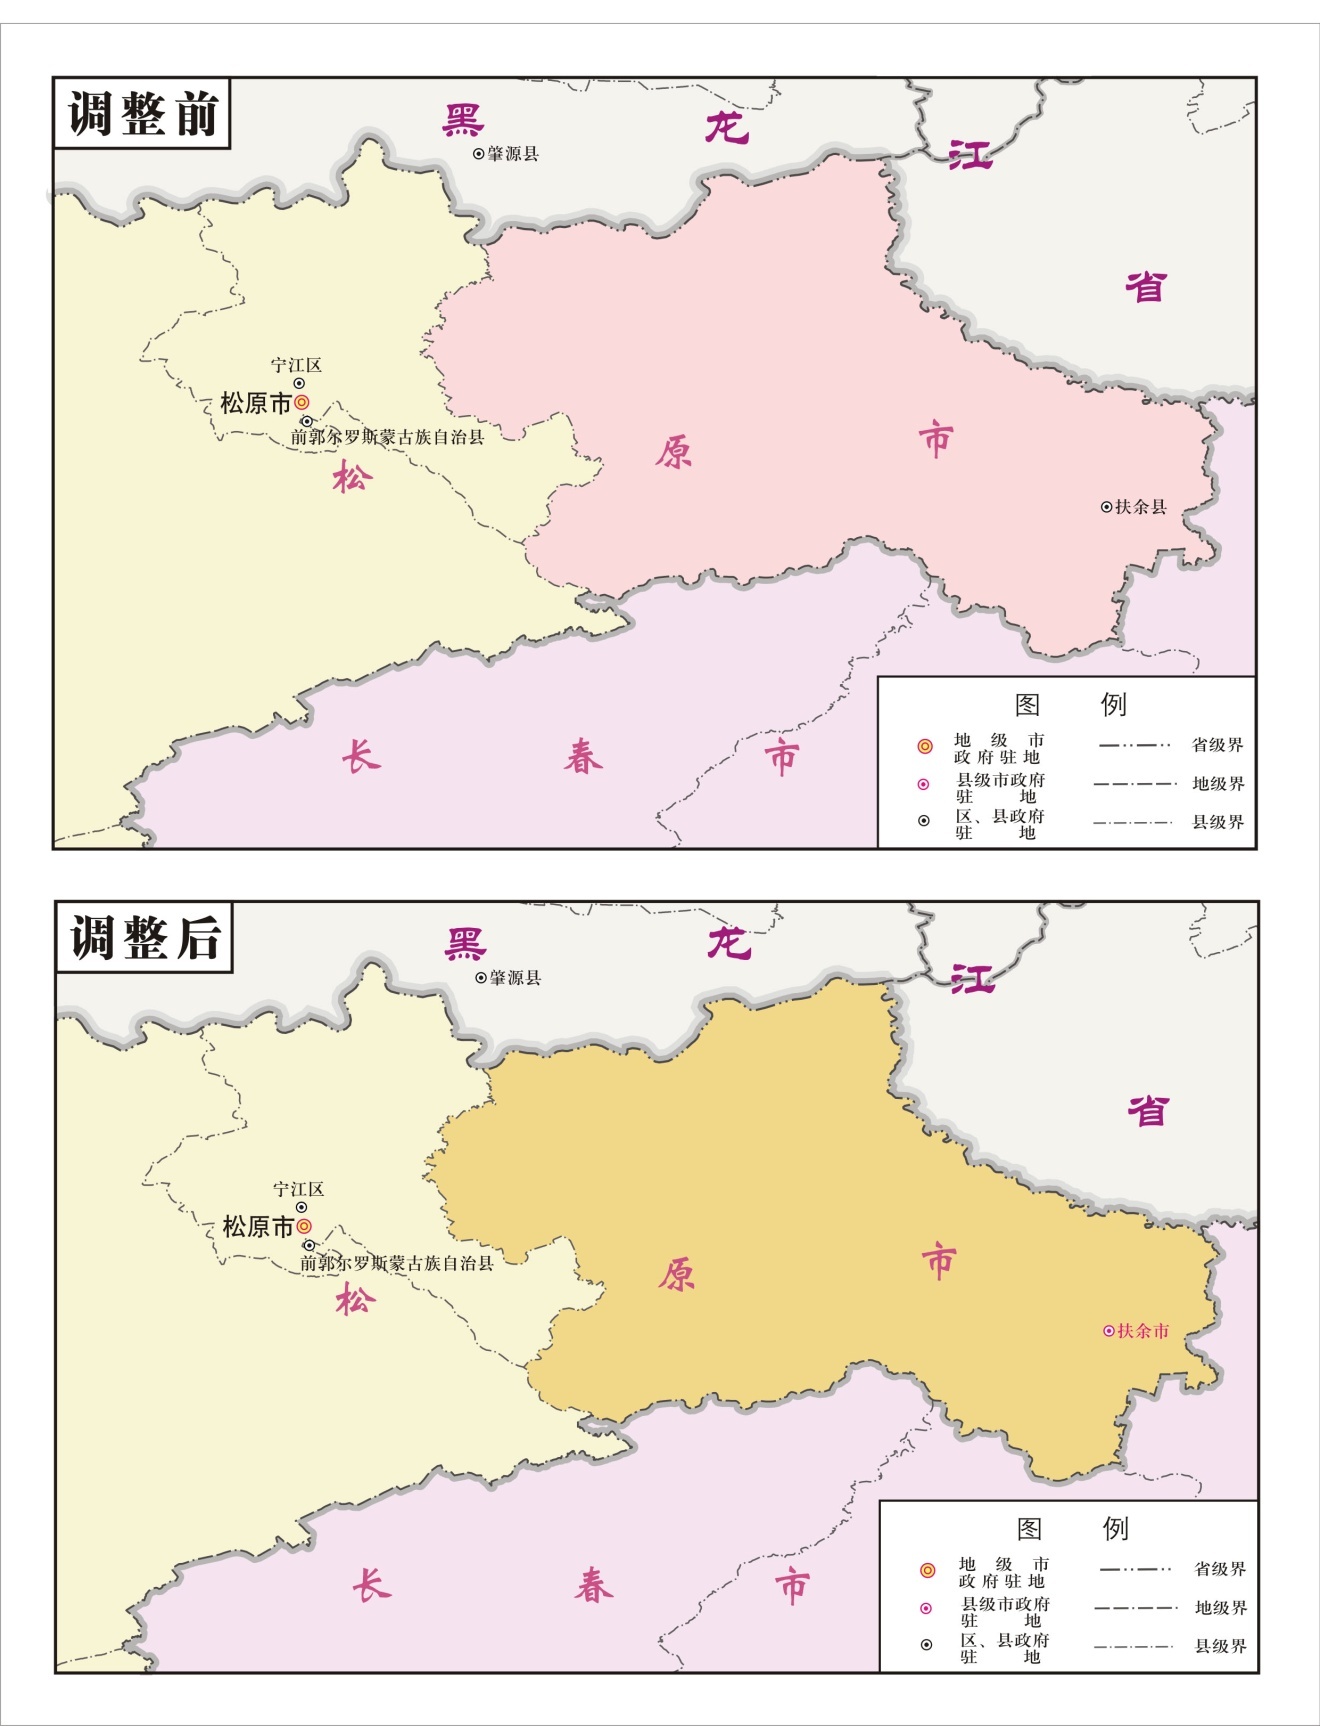 根据《民政部关于同意吉林省撤销扶余县设立县级扶余市的批复》(民图片